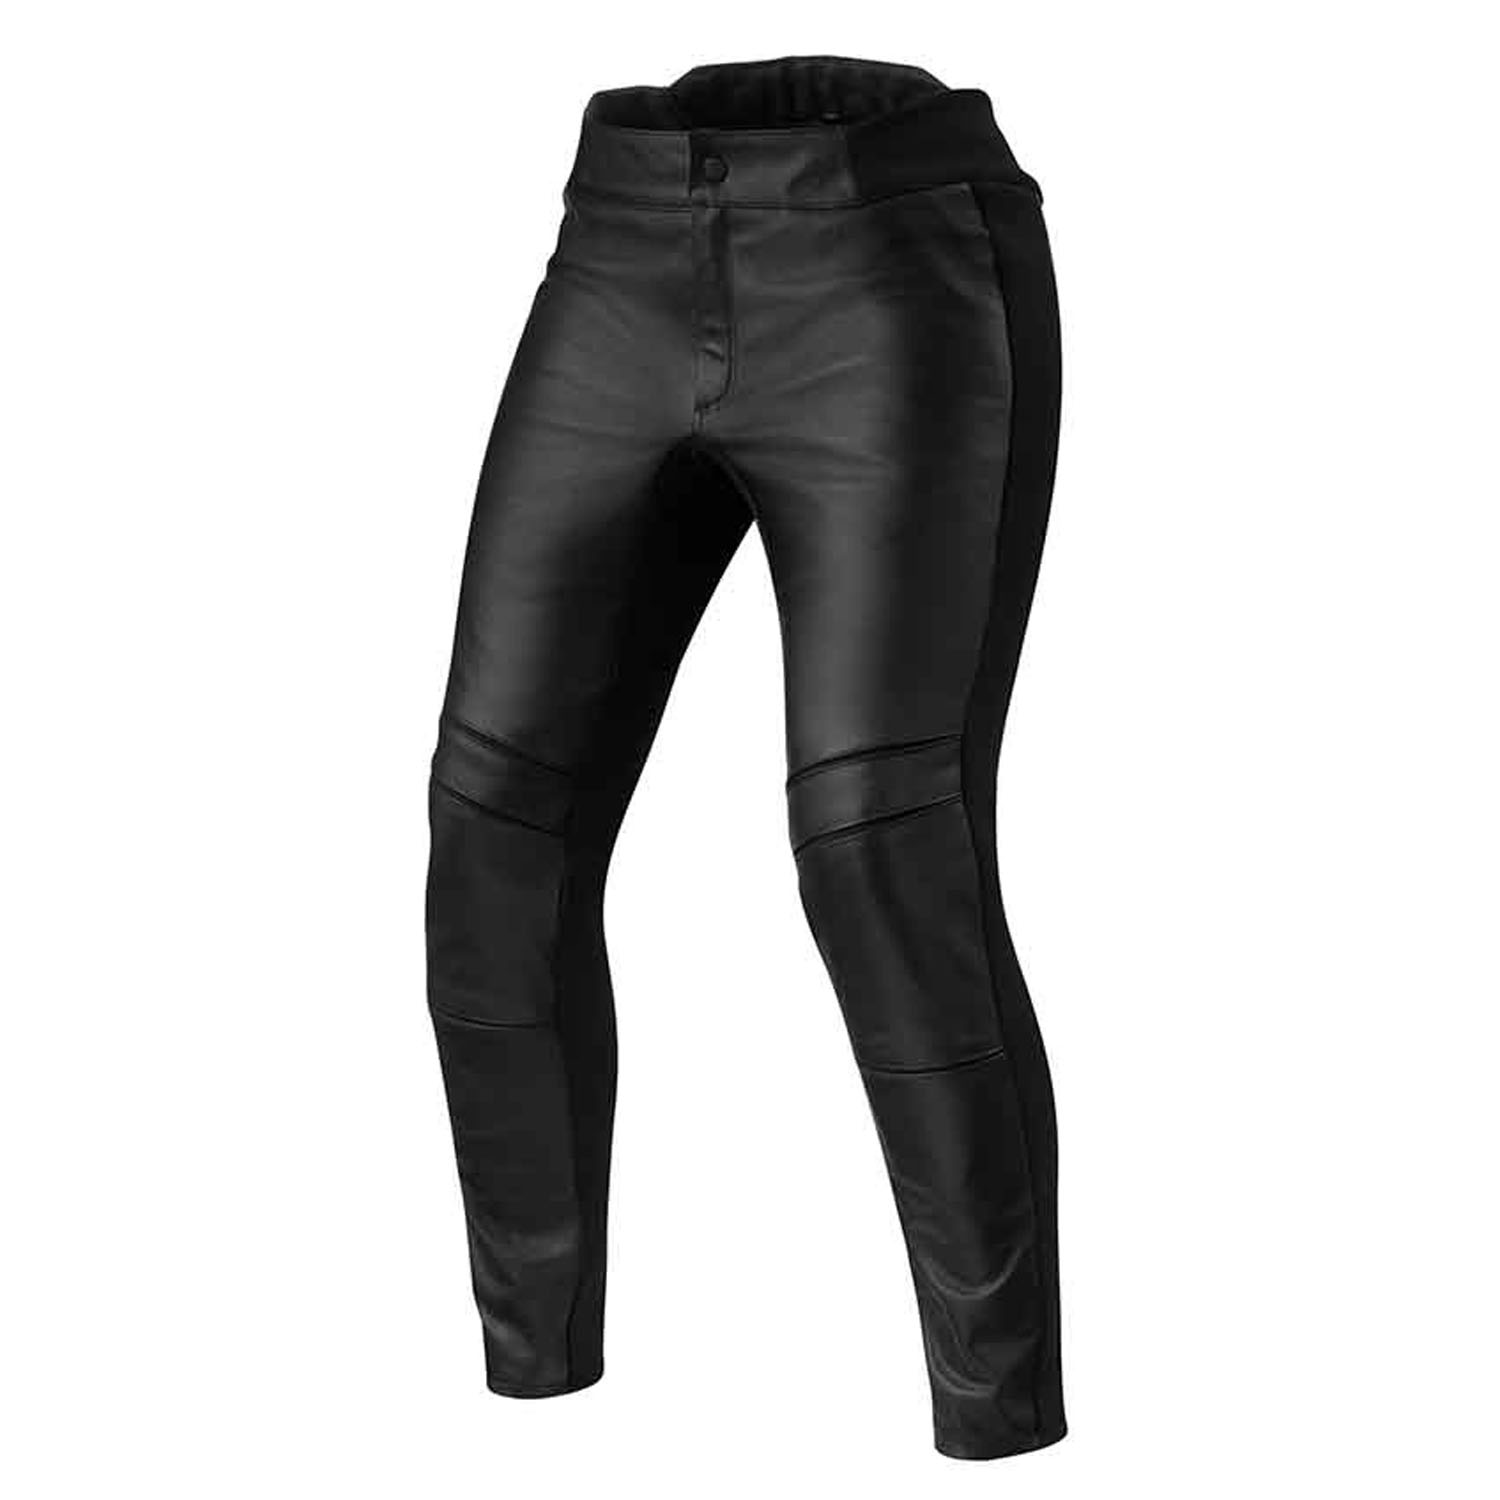 Image of REV'IT! Maci Ladies Black Short Motorcycle Pants Größe 42